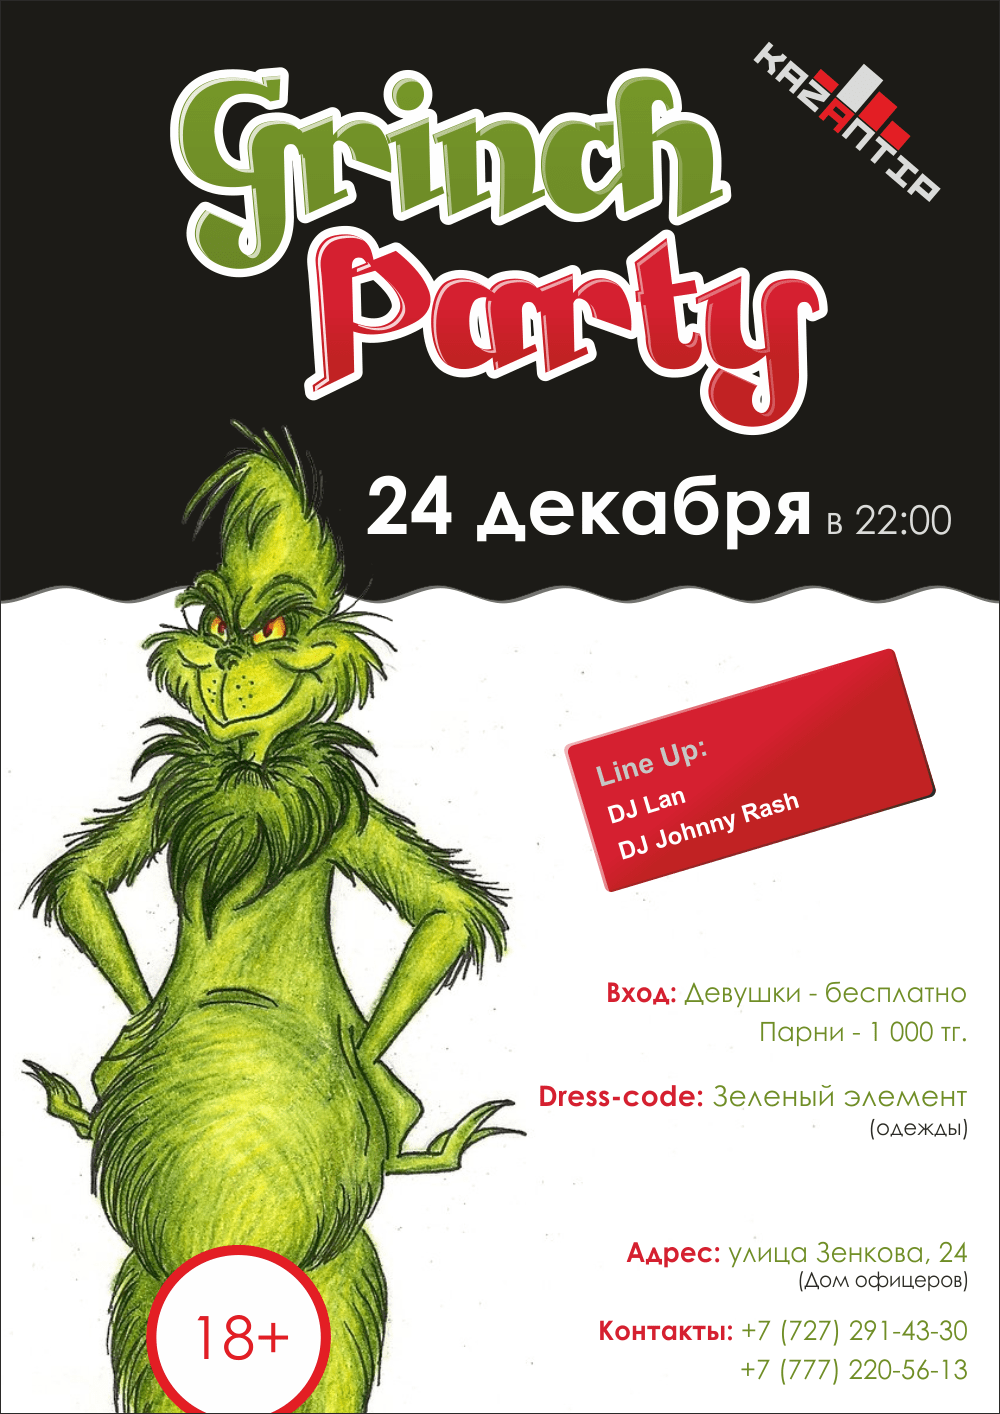 Постер для клуба Kazantip